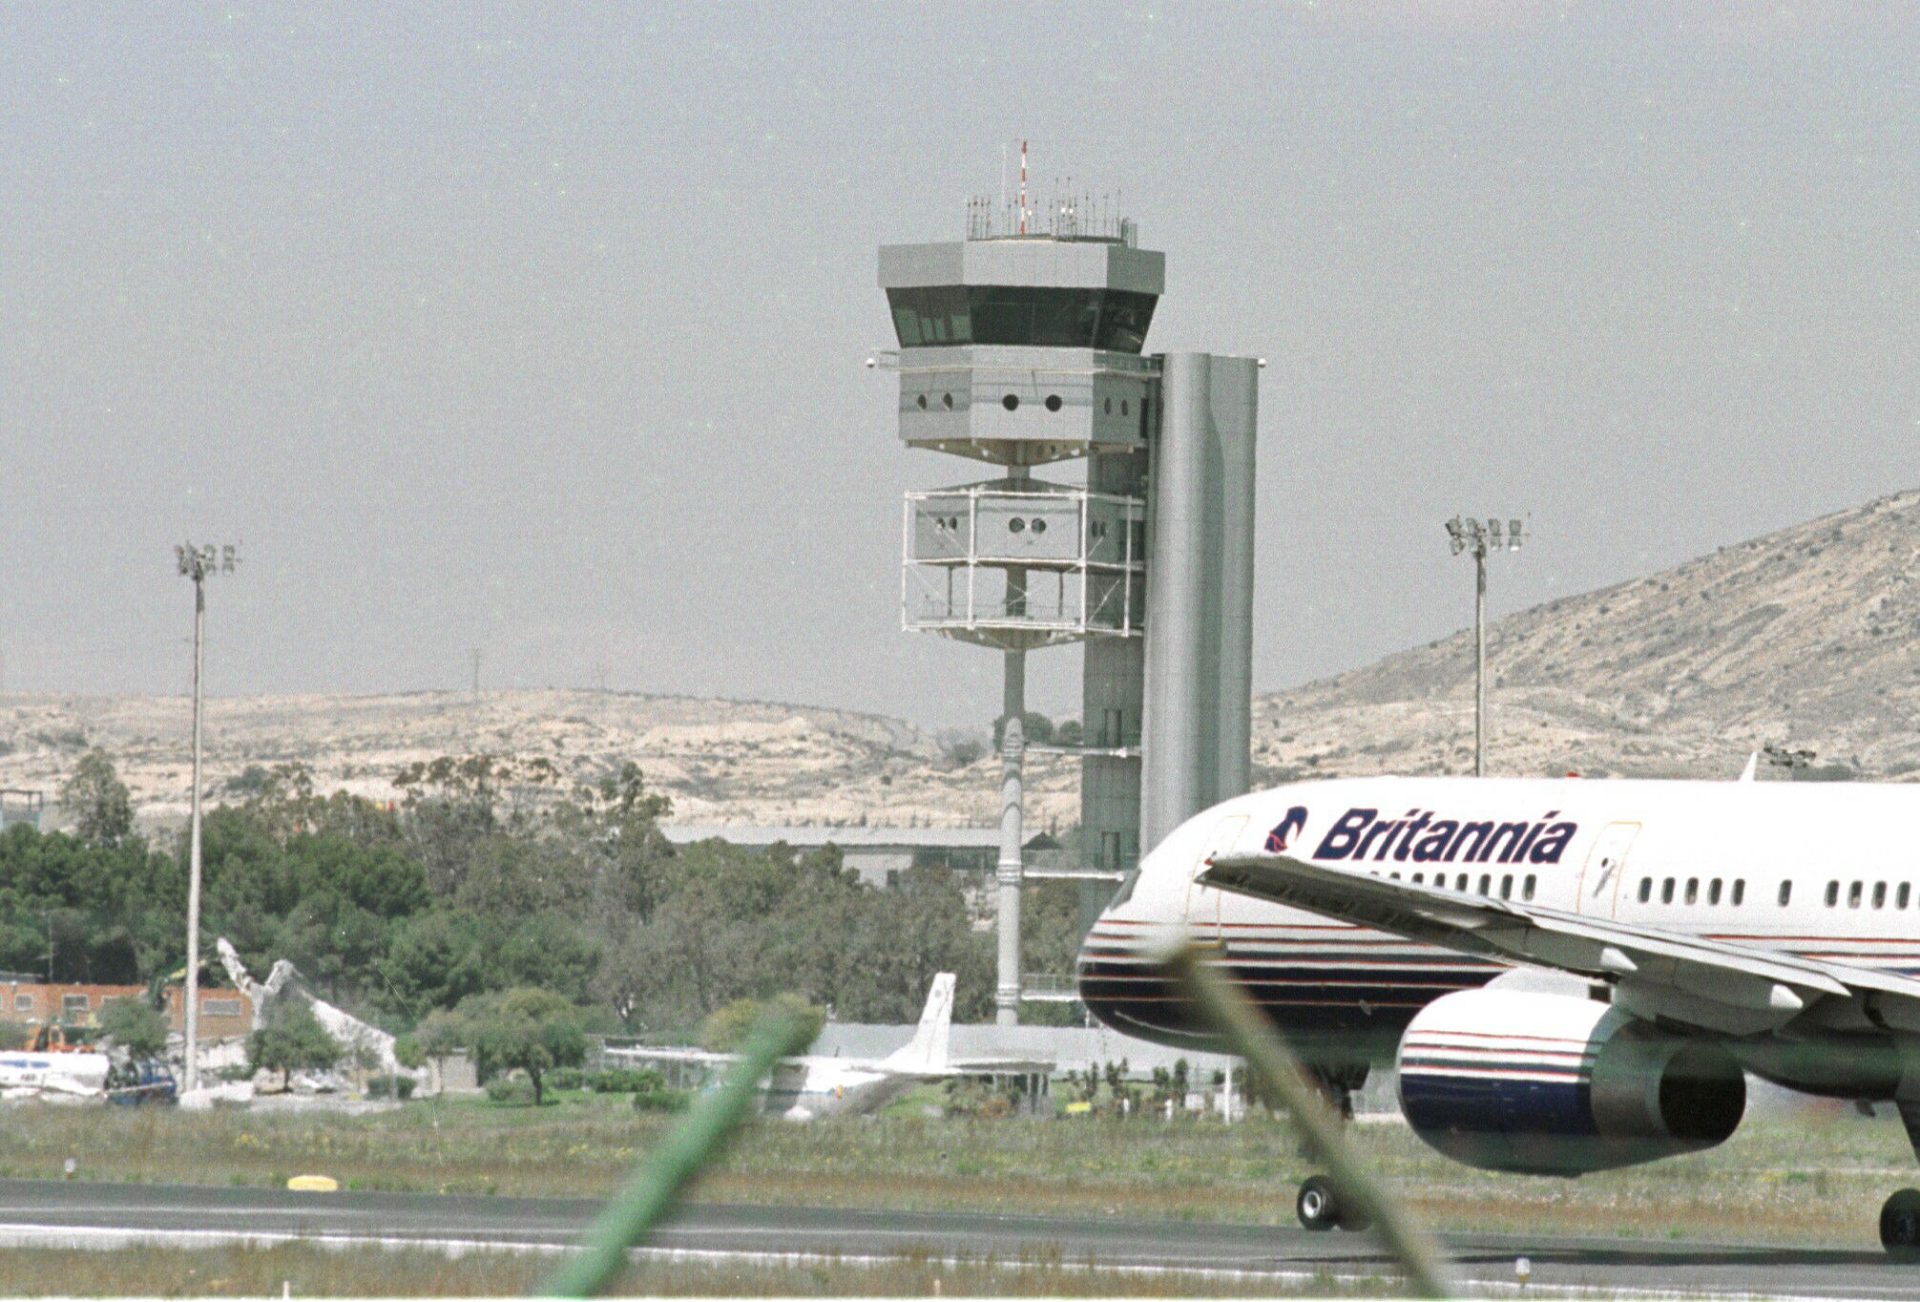 La torre de control del aeropuerto El Altet de Alicante-Elche